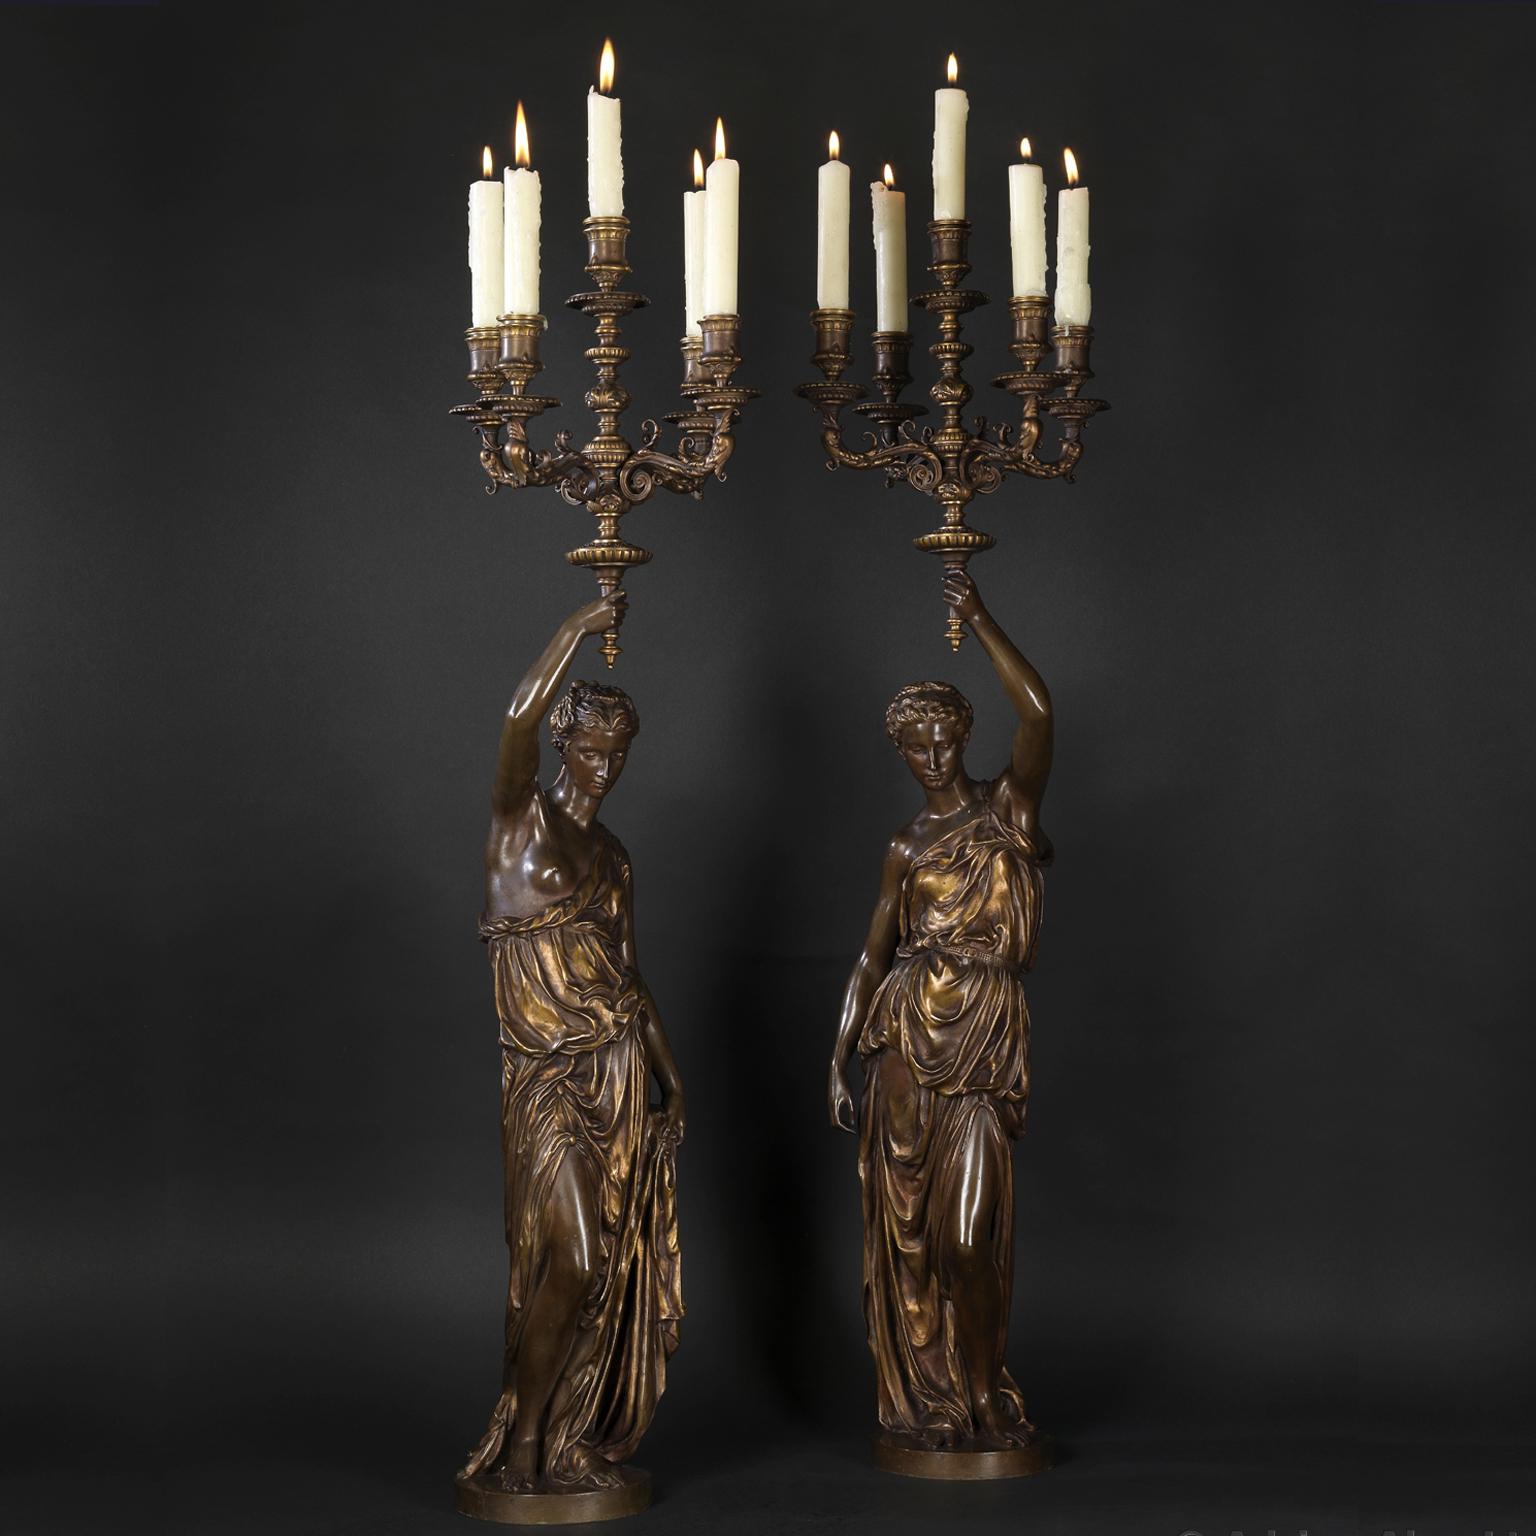 Paire de candélabres figuratifs à cinq lumières en bronze doré et patiné, fondus par Barbedienne d'après les modèles d'Alexandre Falguière et Paul Dubois. 

Signé 'FALGUIERE' et 'P. DUBOIS